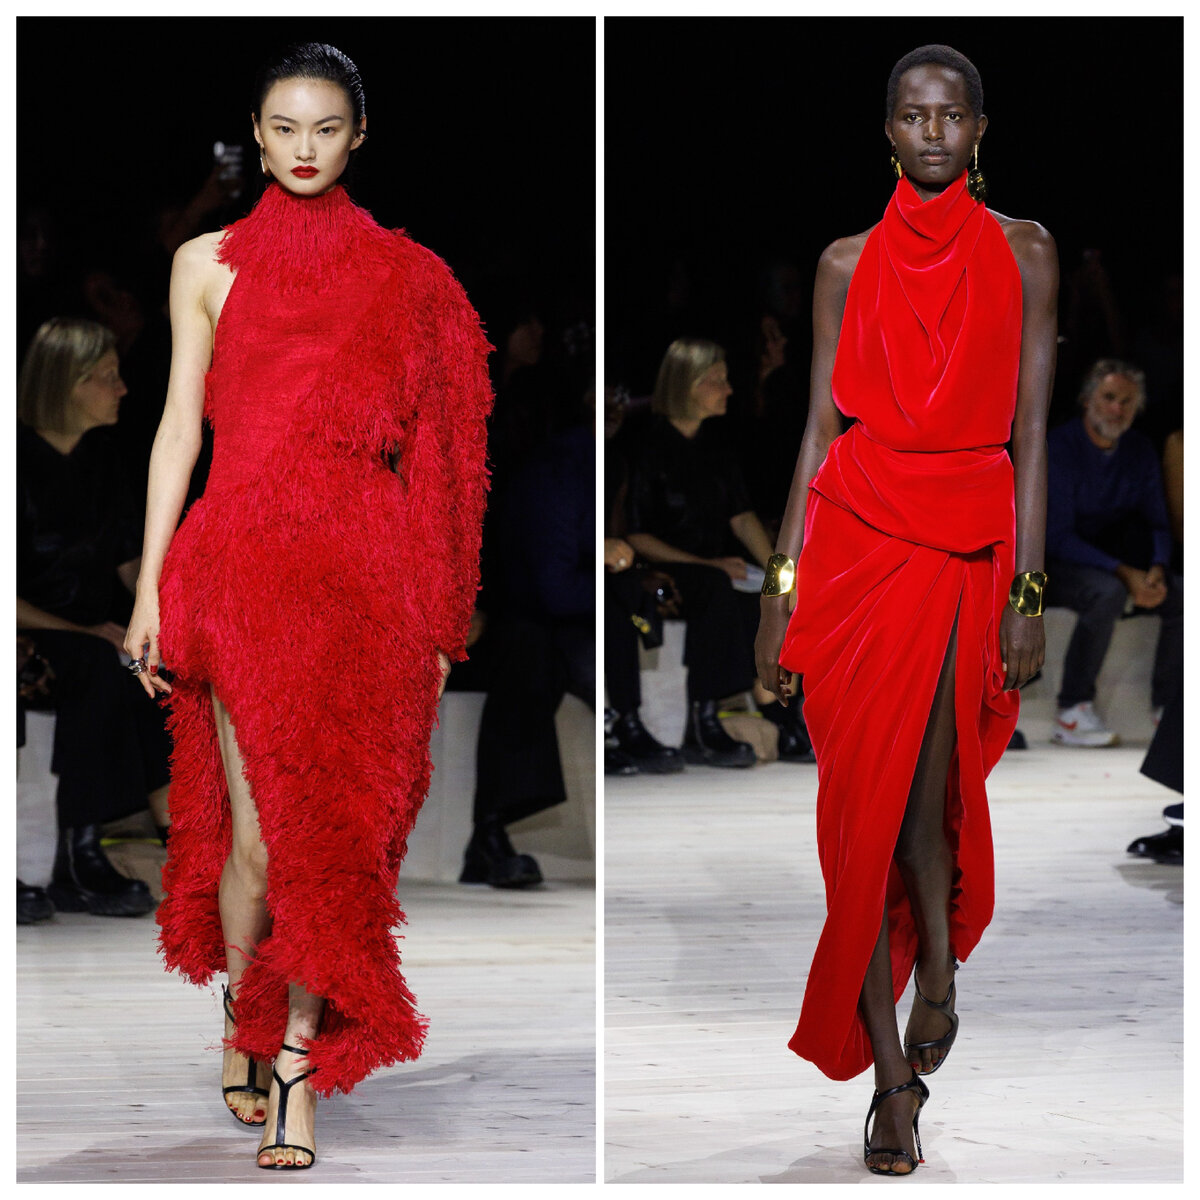 Красное платье: кому подходит и с чем его носить